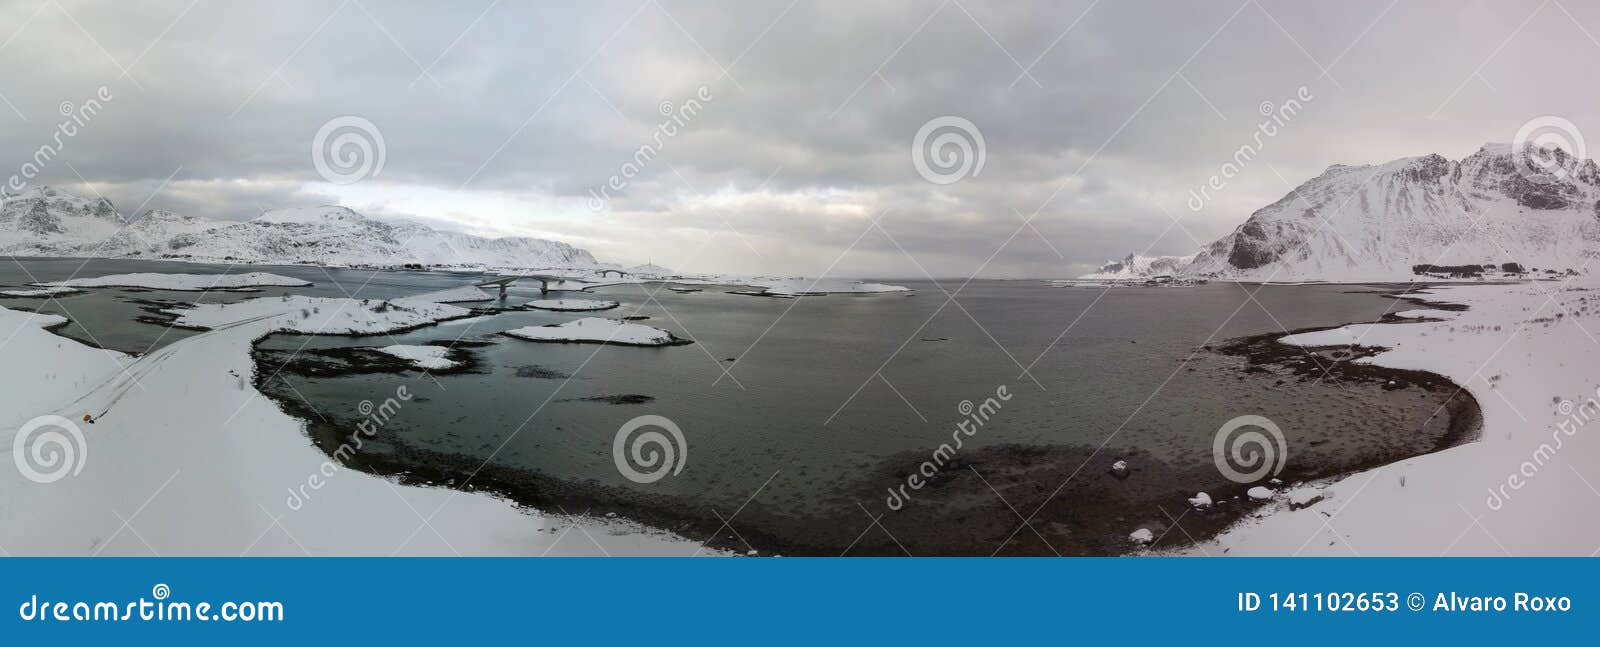 Воздушный панорамный вид трутня изумлять пейзаж зимы островов Lofoten с известным рыбацким поселком Норвегией Reine, Скандинавией Изображение взгляда сверху на заходе солнца